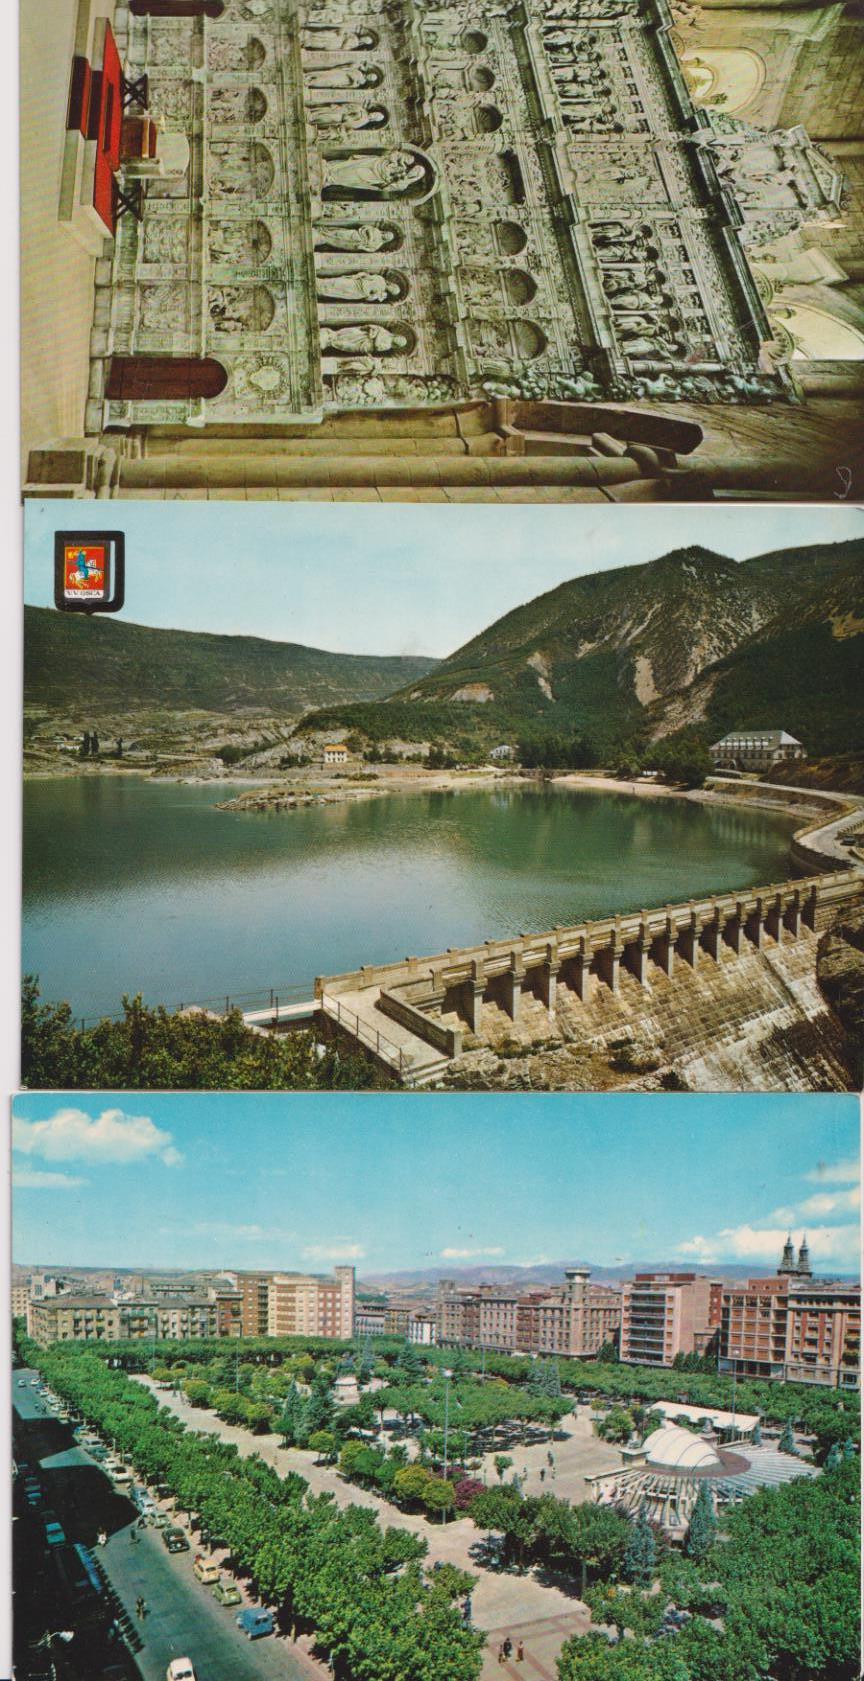 Lote de 3 Postales: Arguis (Huesca) Logroño, Vista General y Real Monasterio de Poblet. Años 60-70